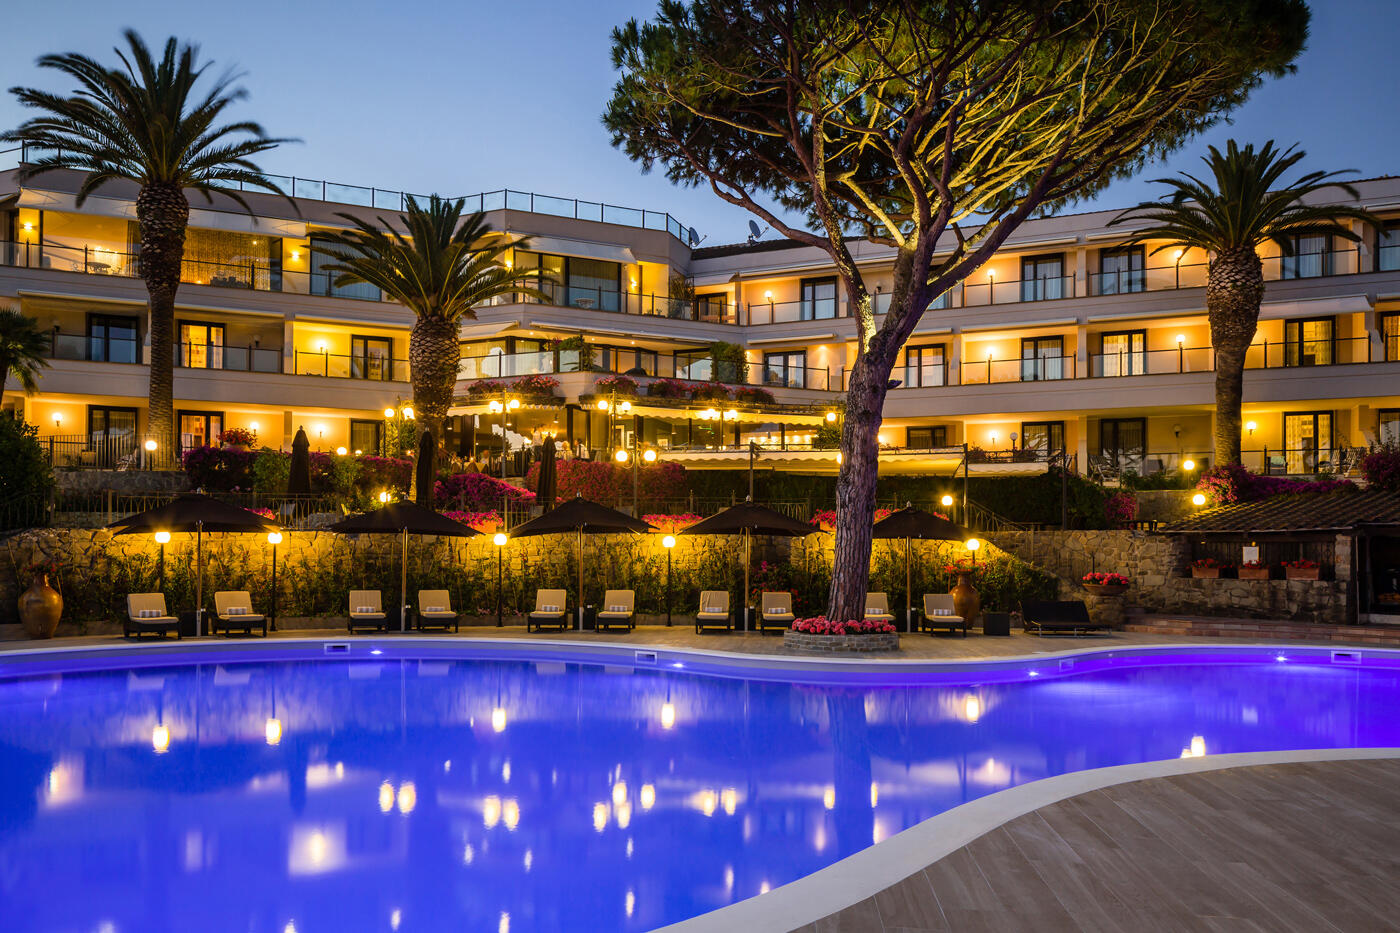 Hotelfassade vom Baglioni Resort Cala Del Porto am Abend mit Pool und Pinienbäume im Vordergrund.